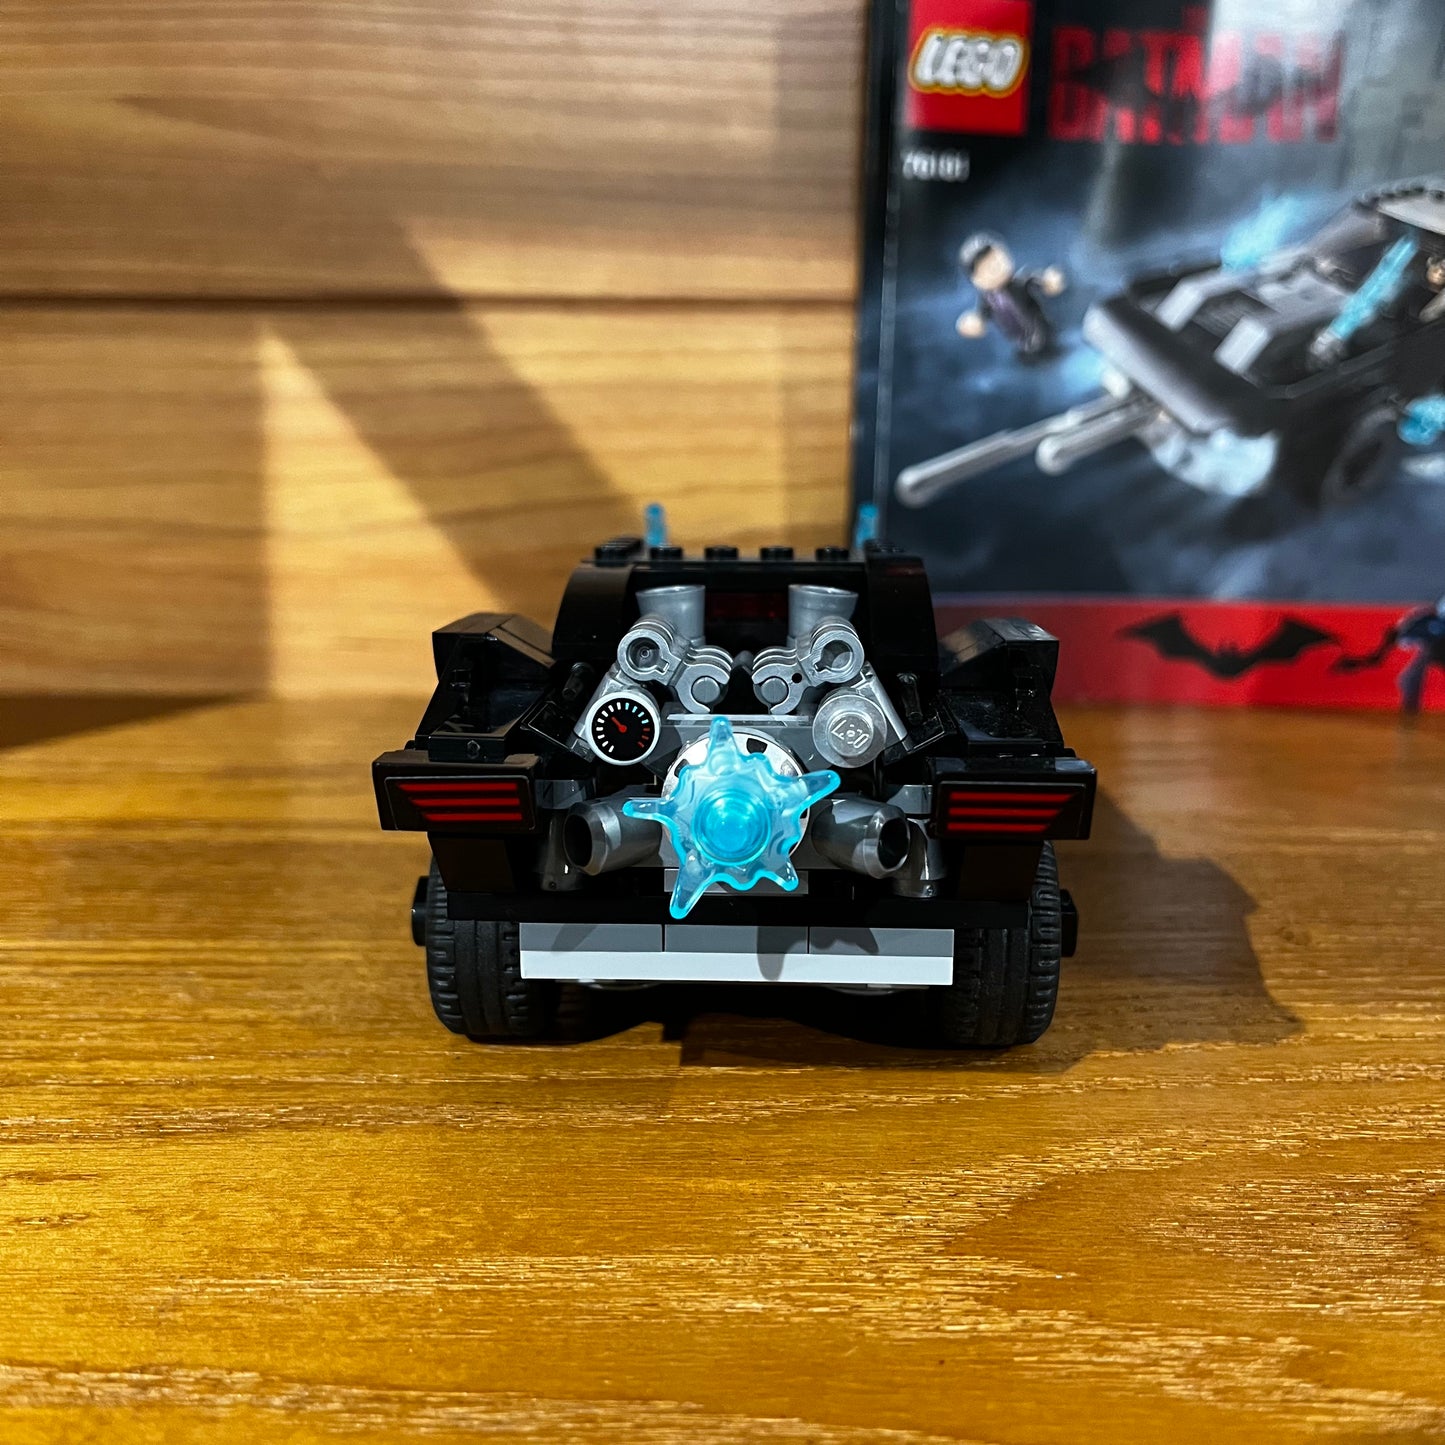 DC Batman Batmobile: The Penguin Chase Pre-Built Lego 76181 set